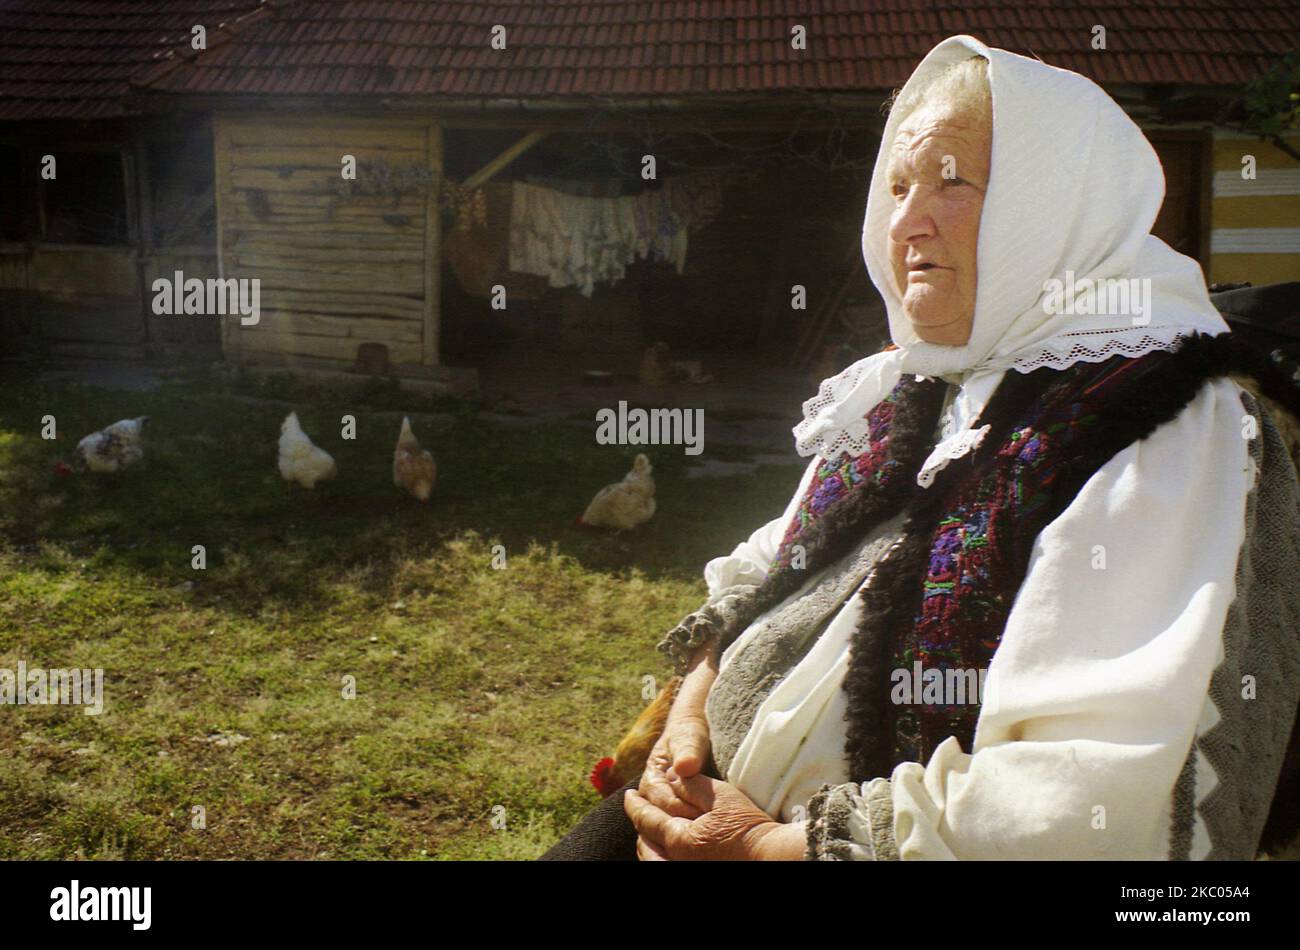 Ältere Frau in traditioneller Tracht in Hunedoara County, Rumänien, ca. 2001. Das weiße Kopftuch wird vor Ort von verheirateten Frauen getragen, während die weiße und graue Kleidung speziell für ältere Frauen geeignet ist. Stockfoto